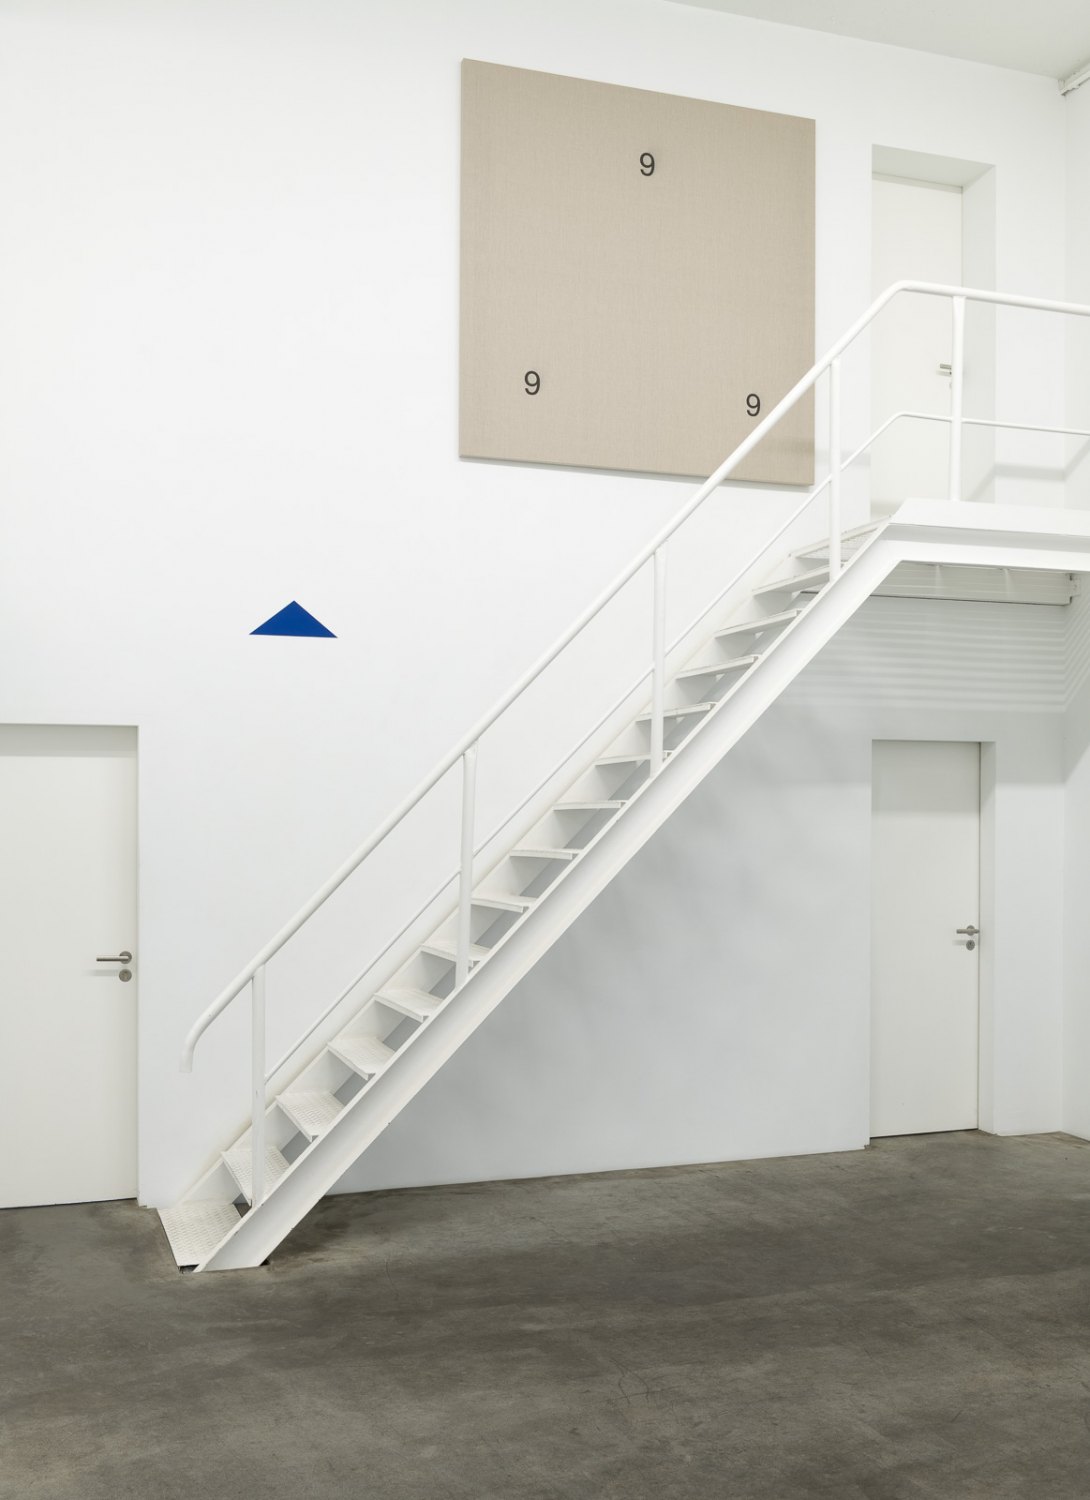 Installation view, Karl Holmqvist, #SAVEYOURTEARS..., Galerie Neu, Berlin 2021